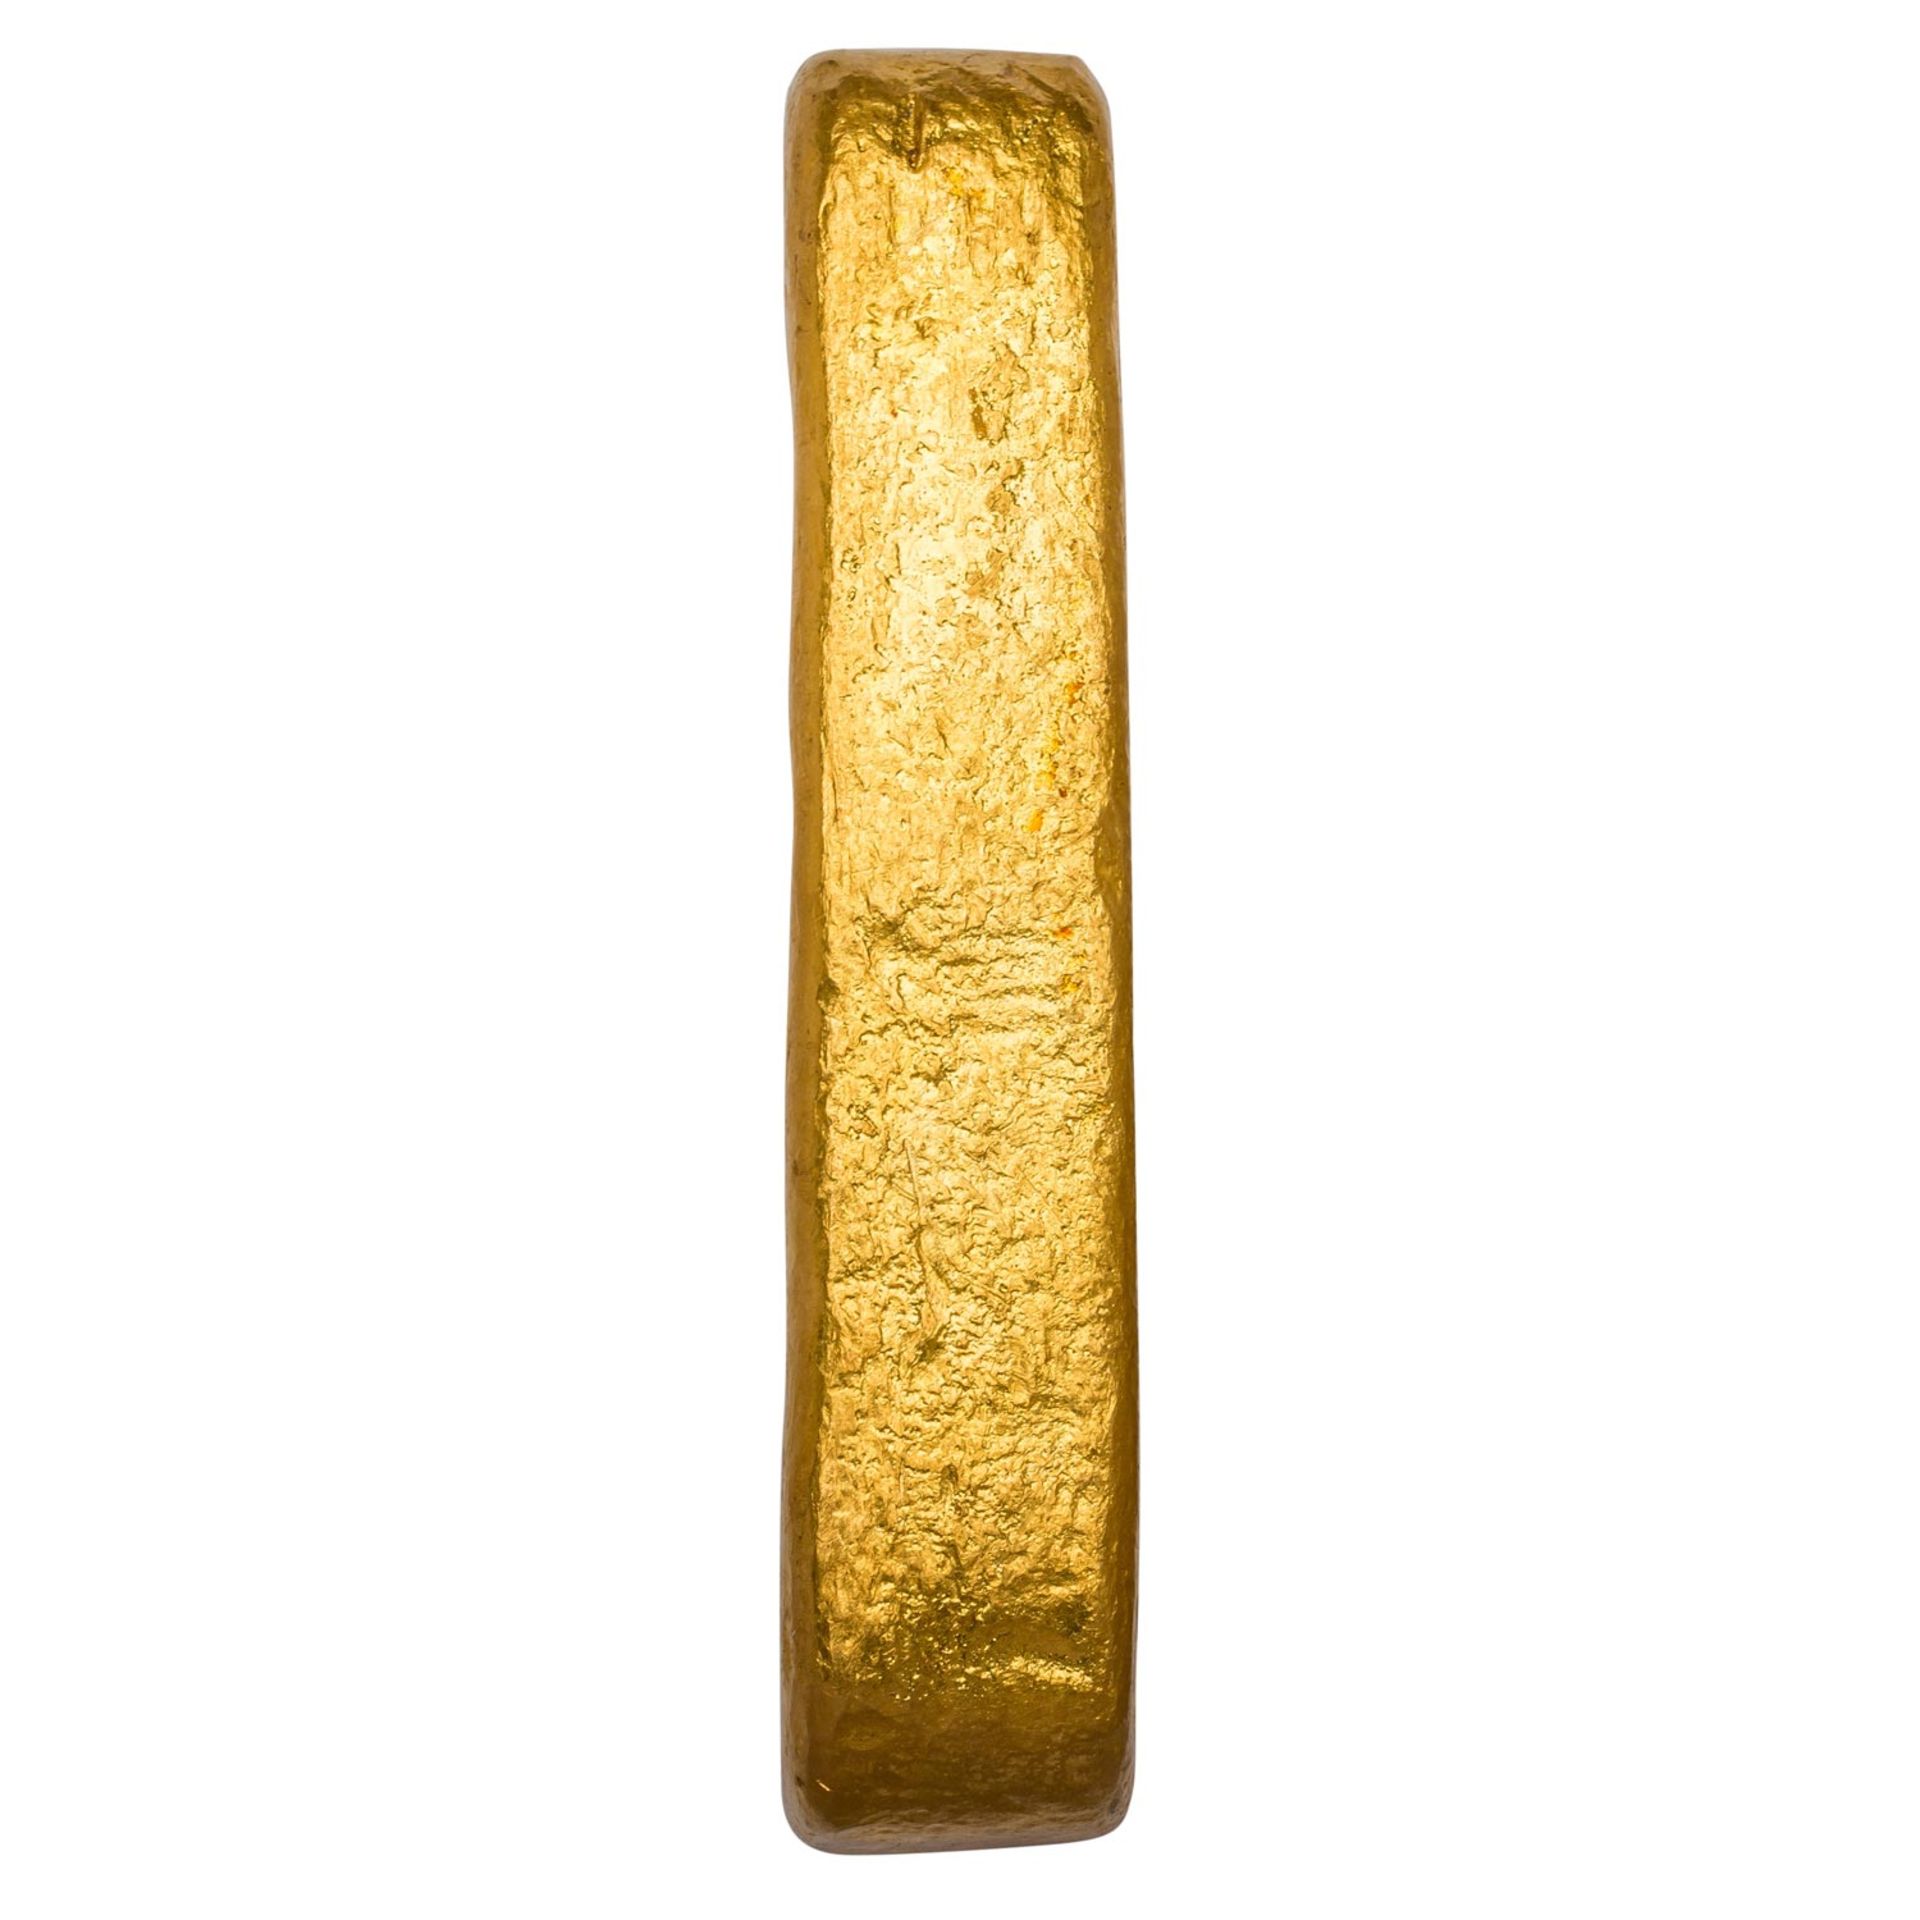 Historischer GOLDbarren aus Frankreich - ca. 994.9 Gramm oder 35.09 Unzen Gold fein, 995.9er Legieru - Image 5 of 6